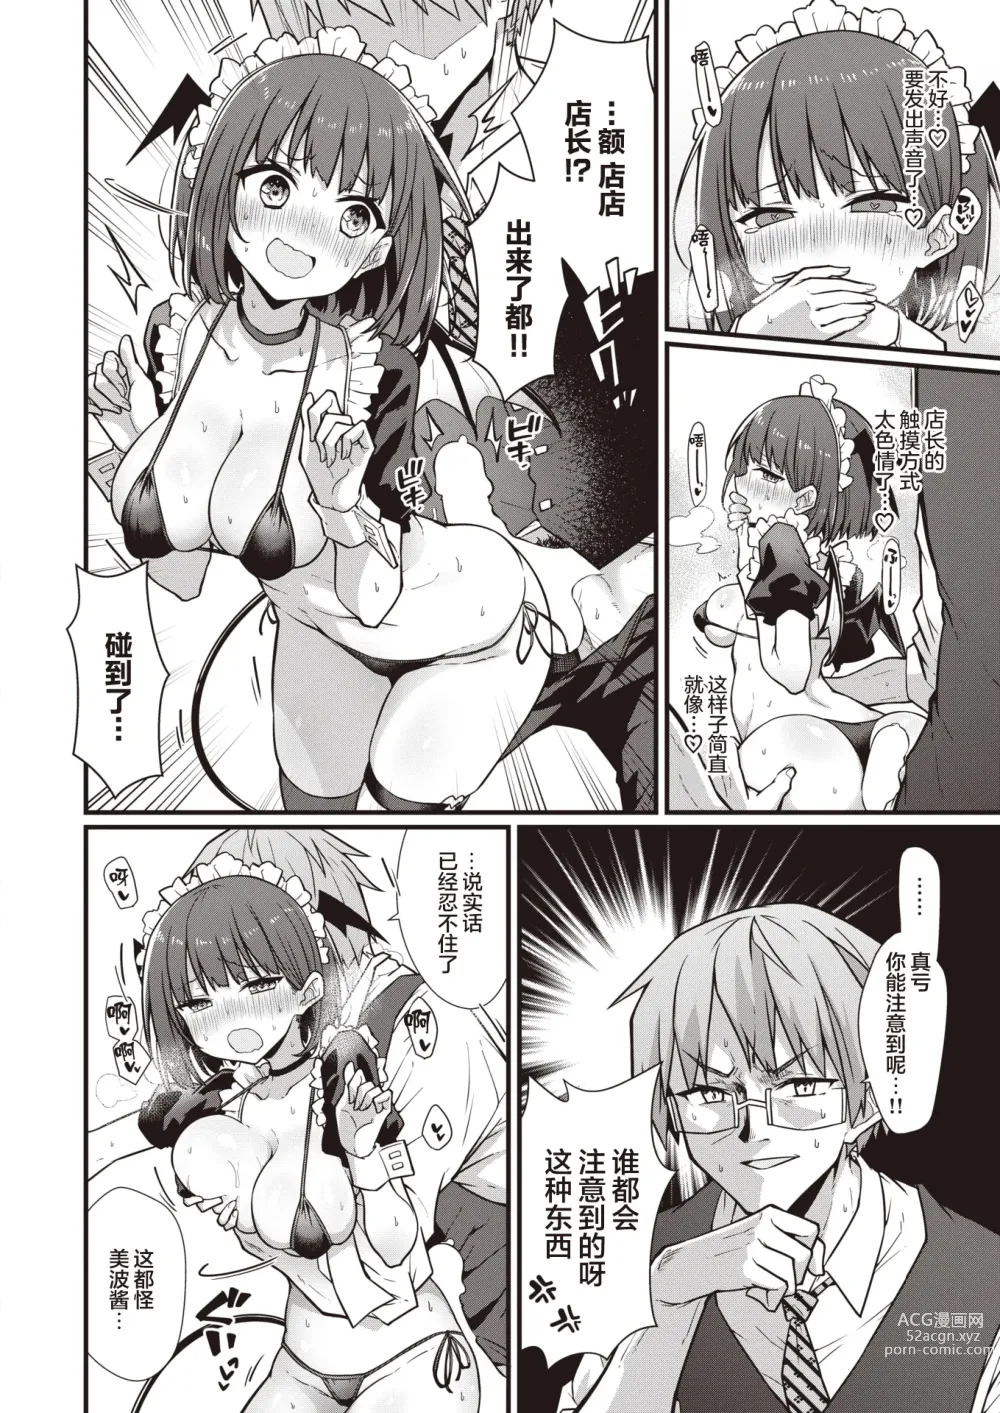 Page 11 of manga Hatarake! Minami-chan!